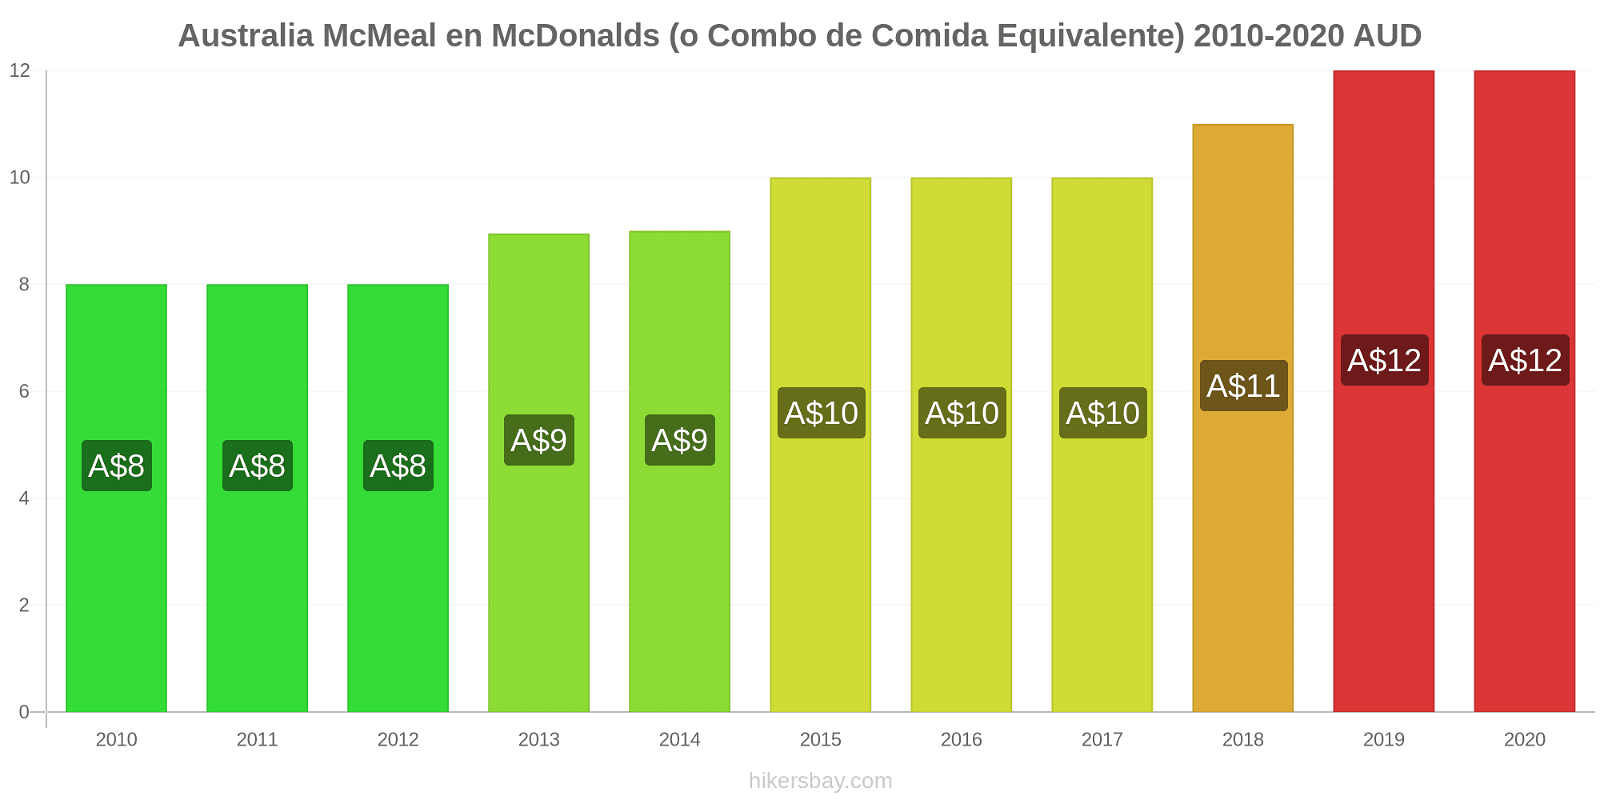 Australia cambios de precios McMeal en McDonalds (o menú equivalente) hikersbay.com